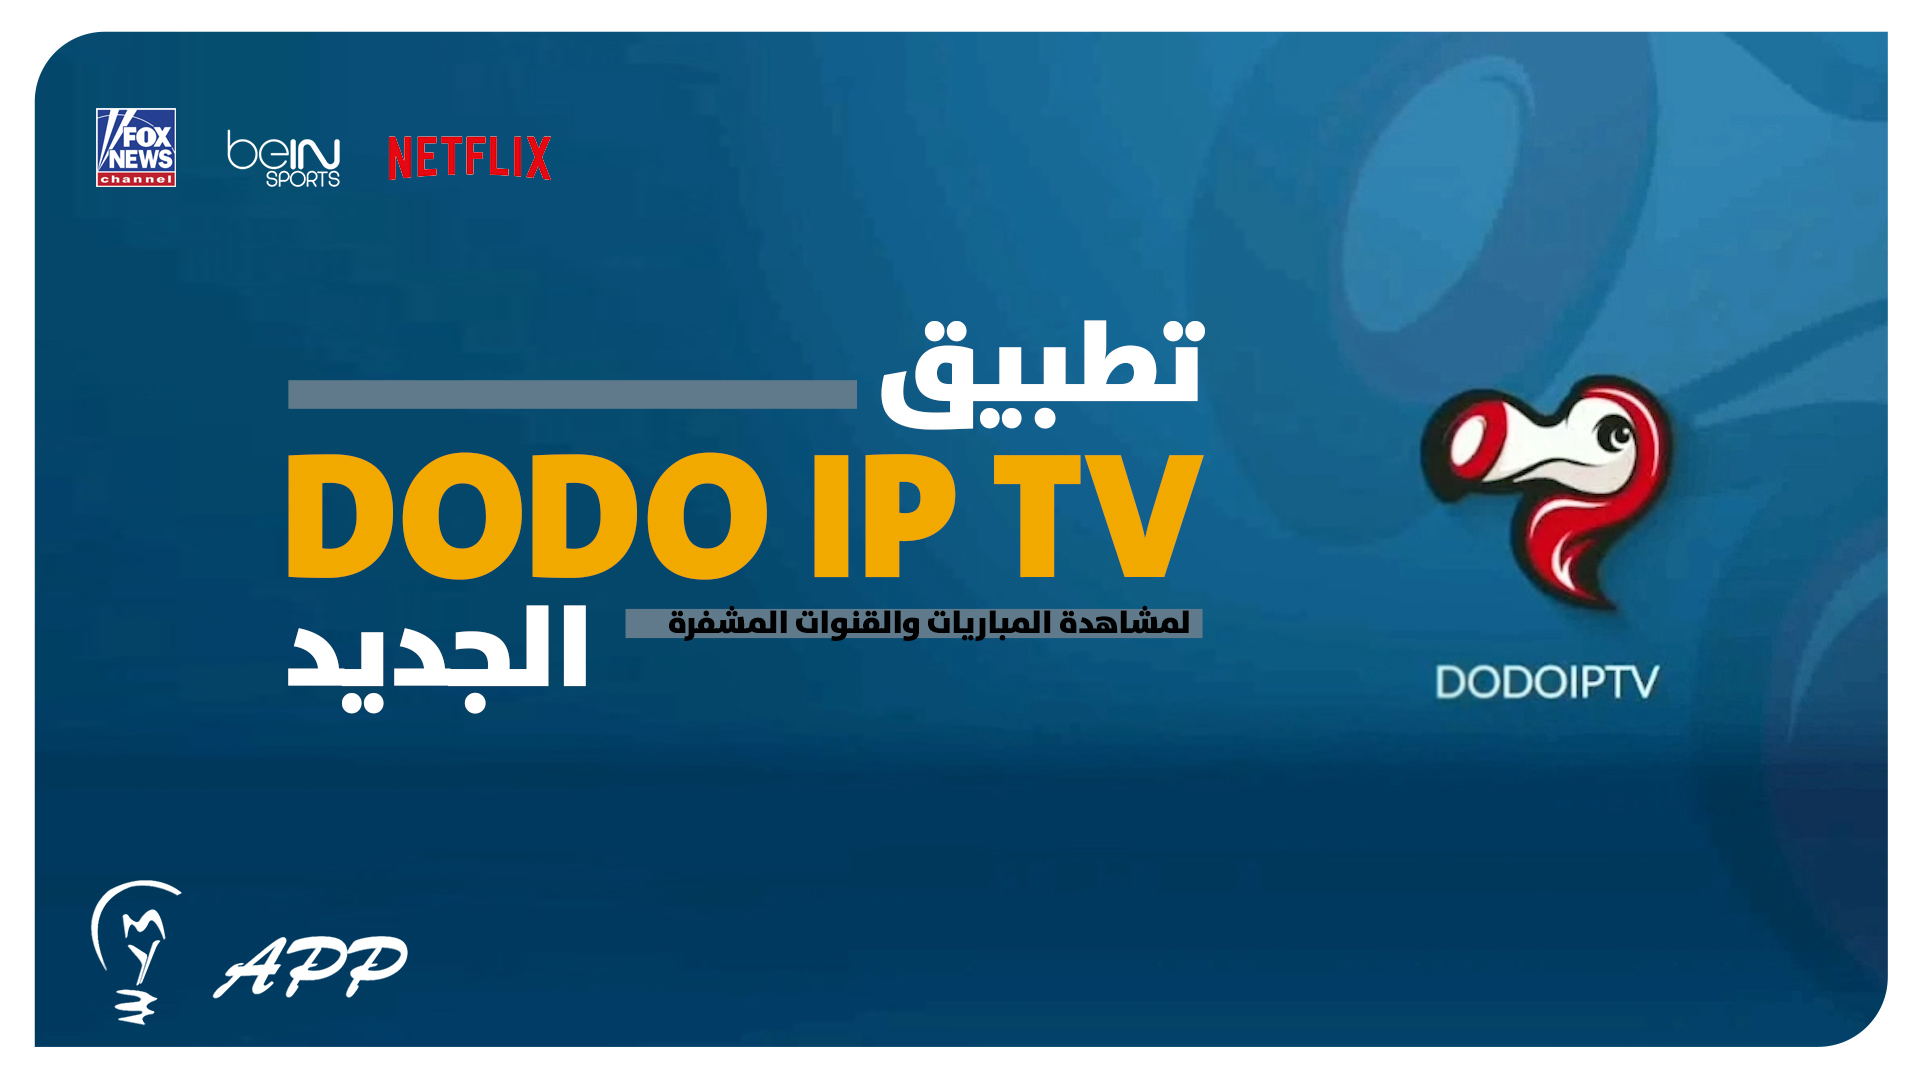 تطبيق DODO iptv للاندرويد عربي